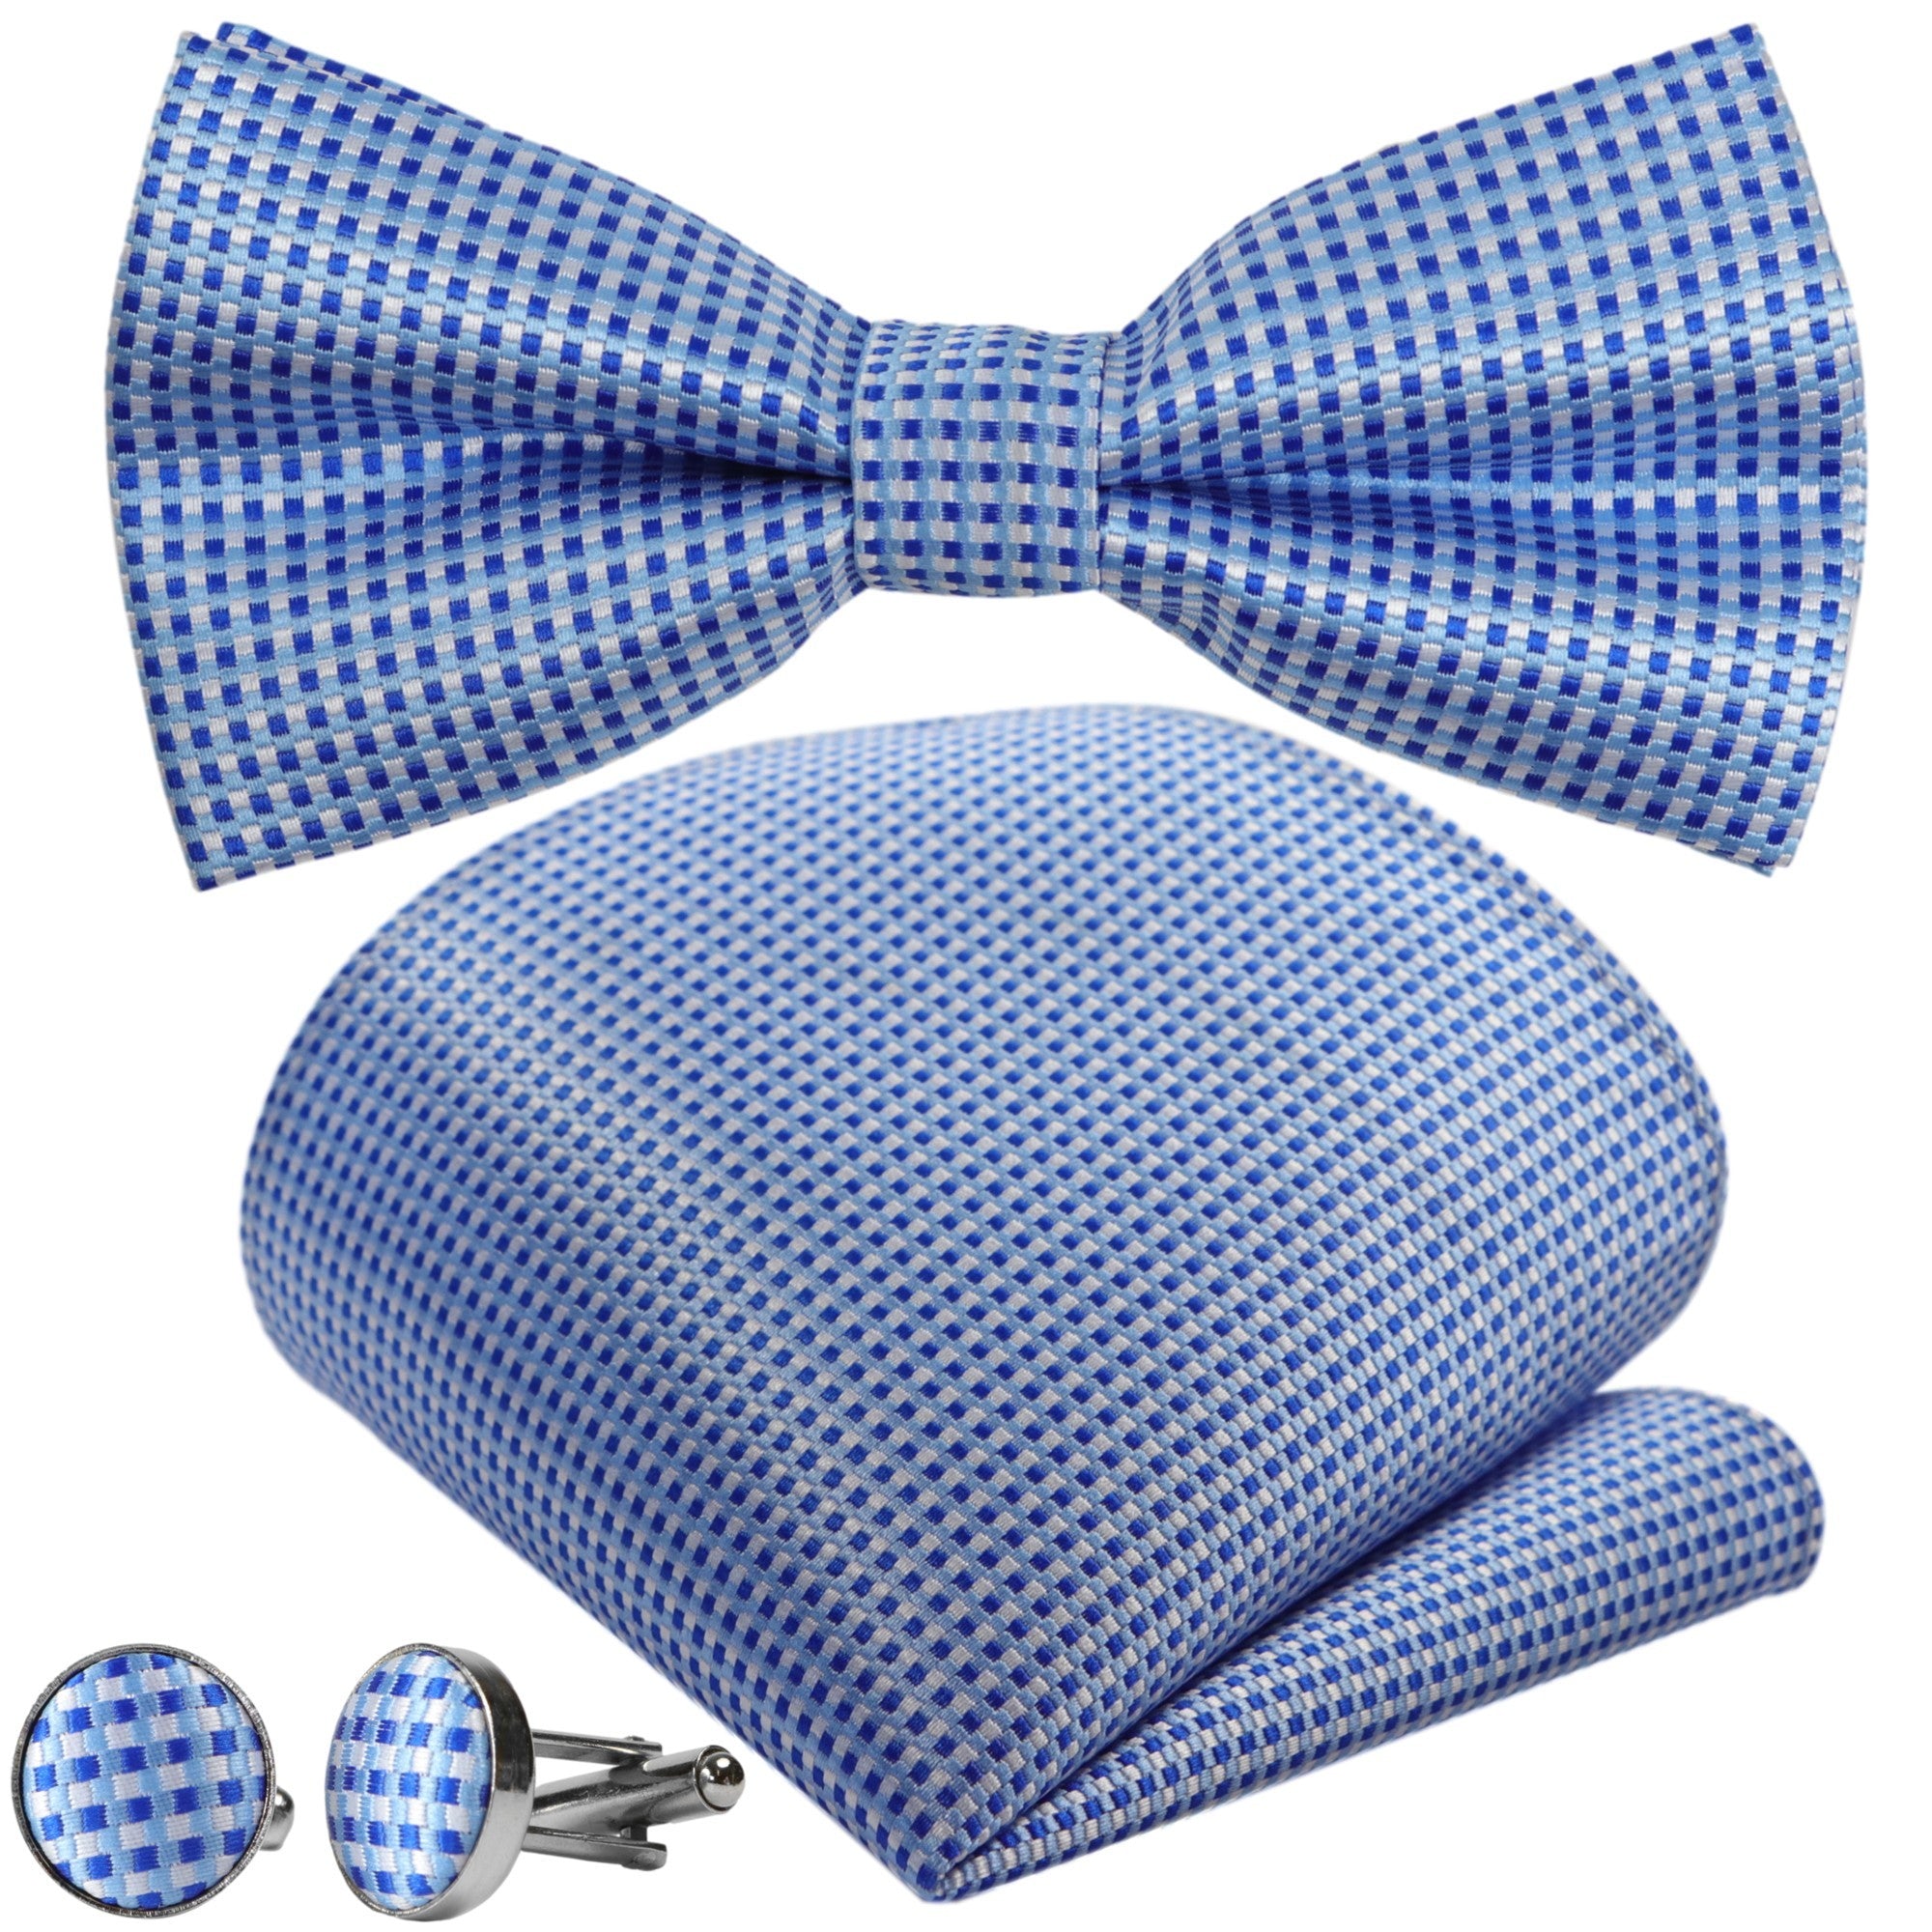 Blau-Weiss im - Herren-Fliege! Kaufen Sie GASSANI Krawatten GASSANIshop Karierte